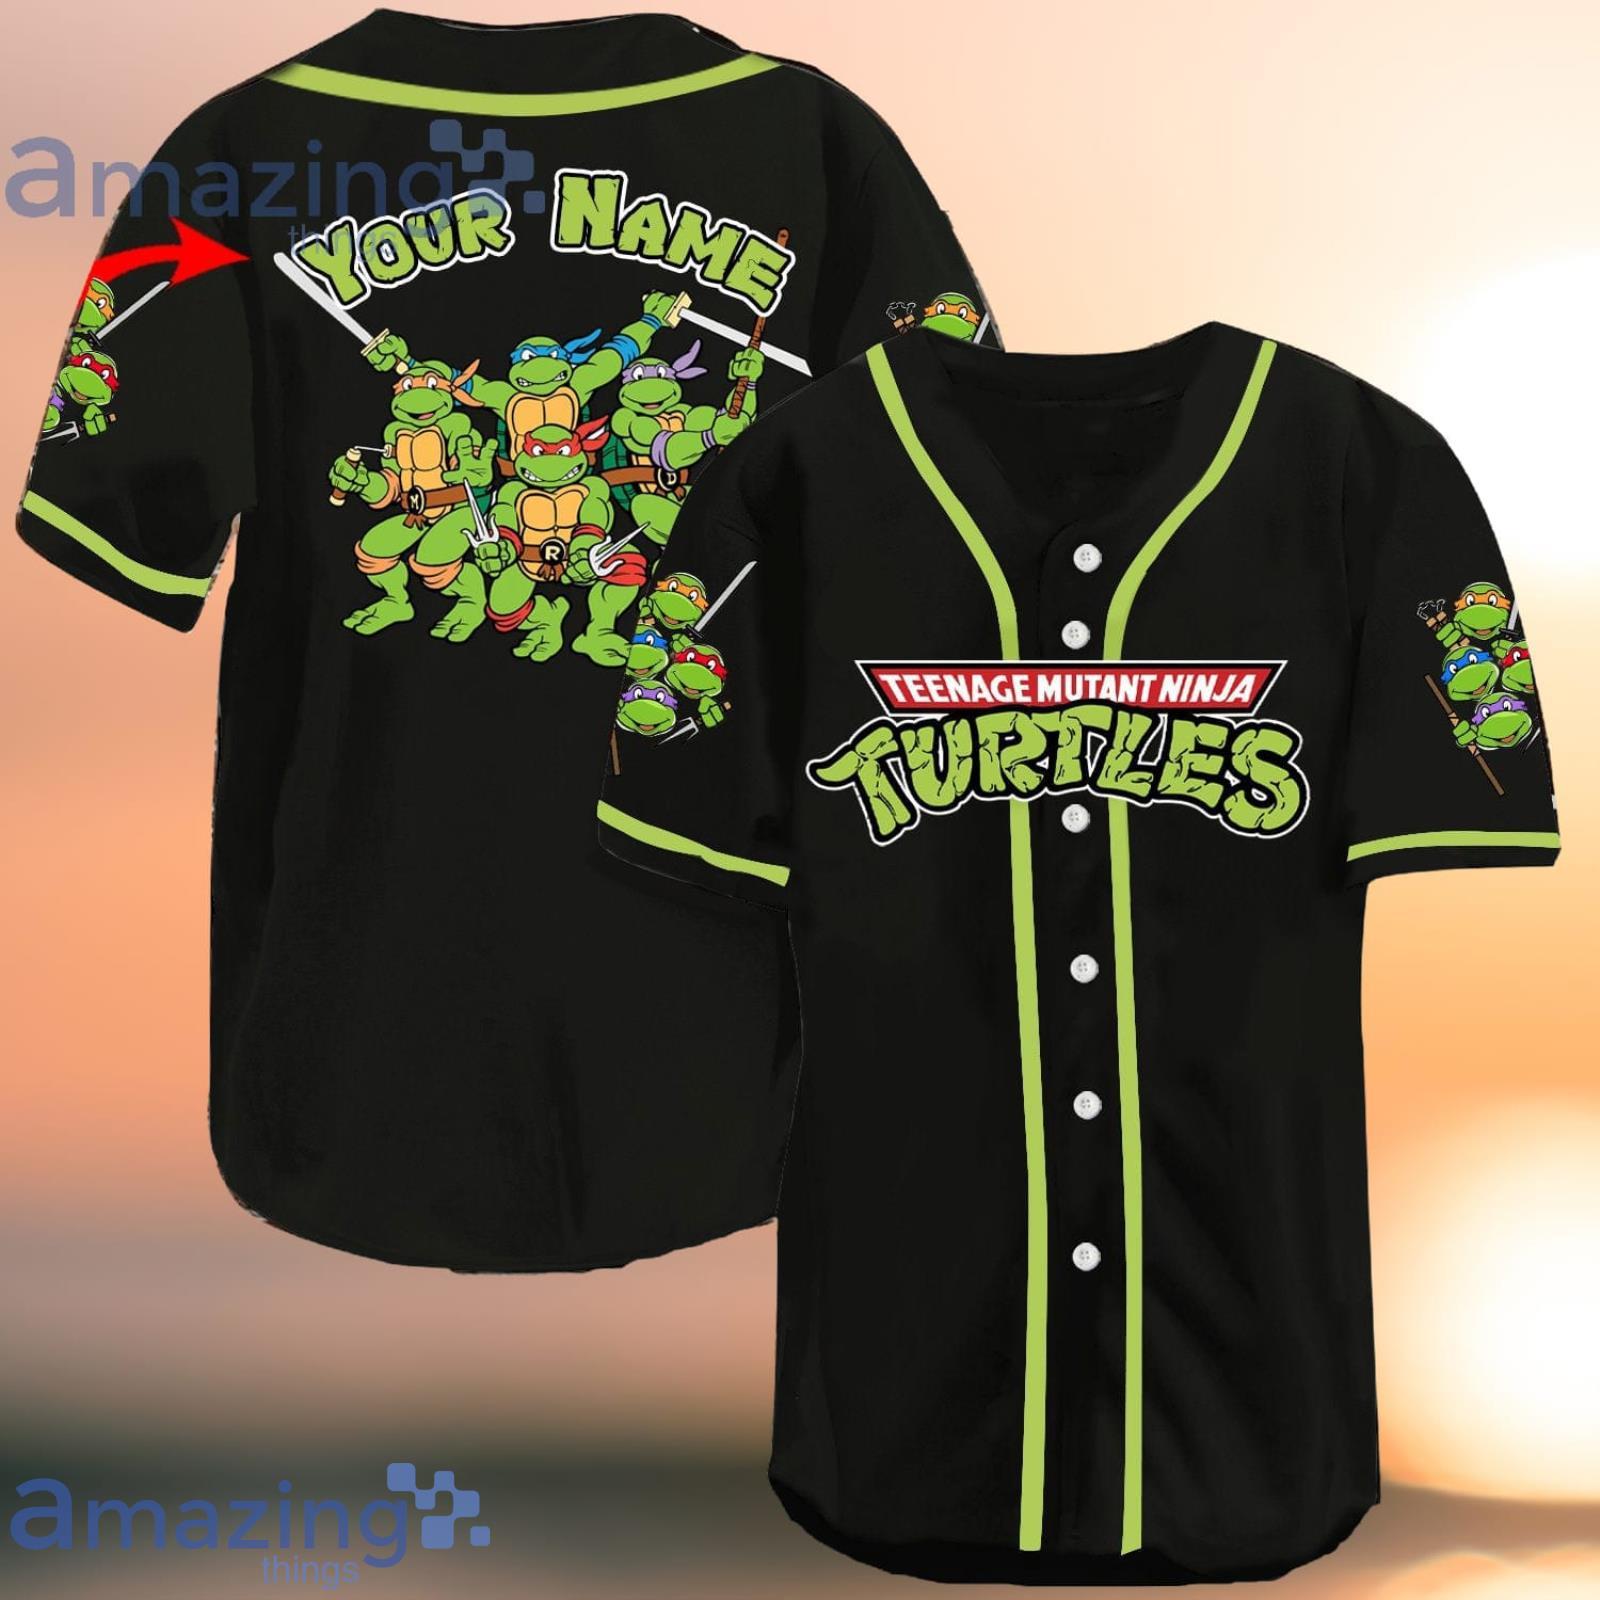 https://image.whatamazingthings.com/2023/03/personalized-teenage-mutant-ninja-turtles-baseball-jersey-shirt.jpg